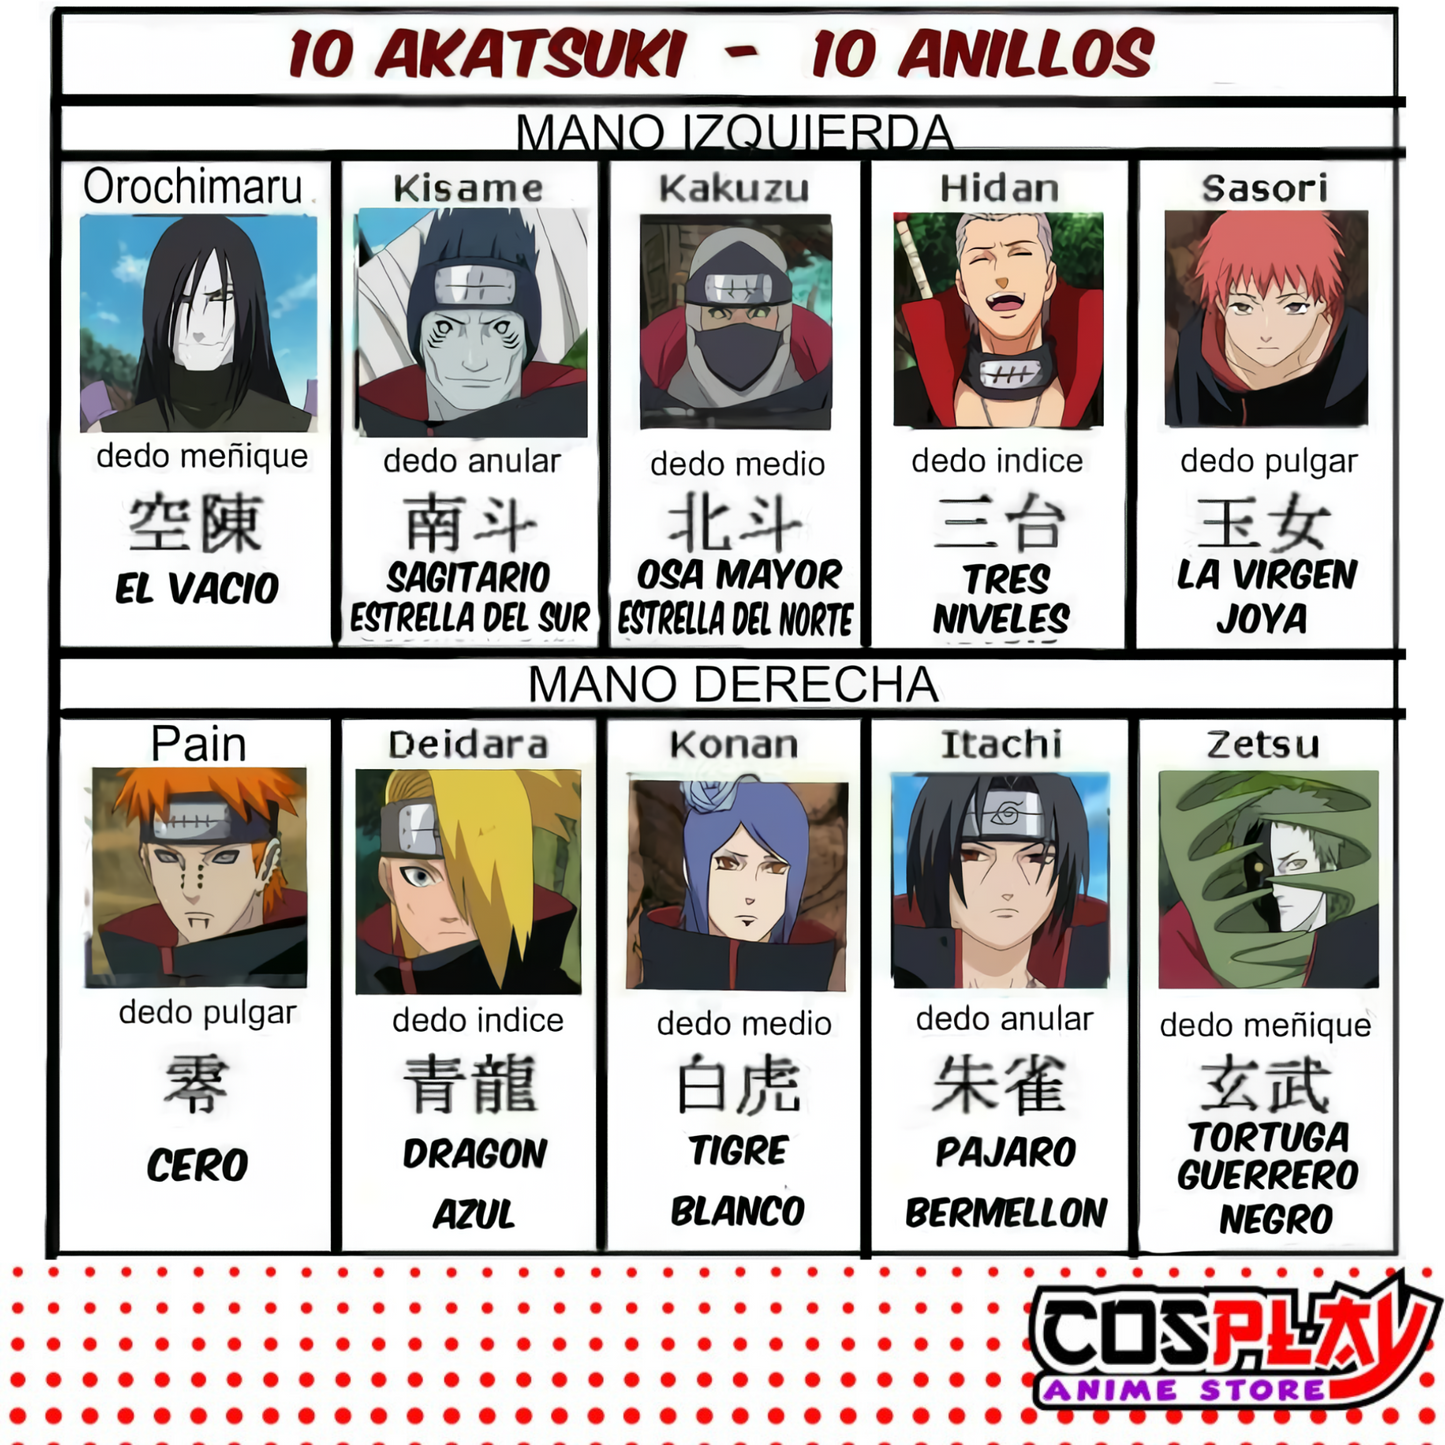 Anillo Akatsuki  Kisame - Naruto Metal Dorado